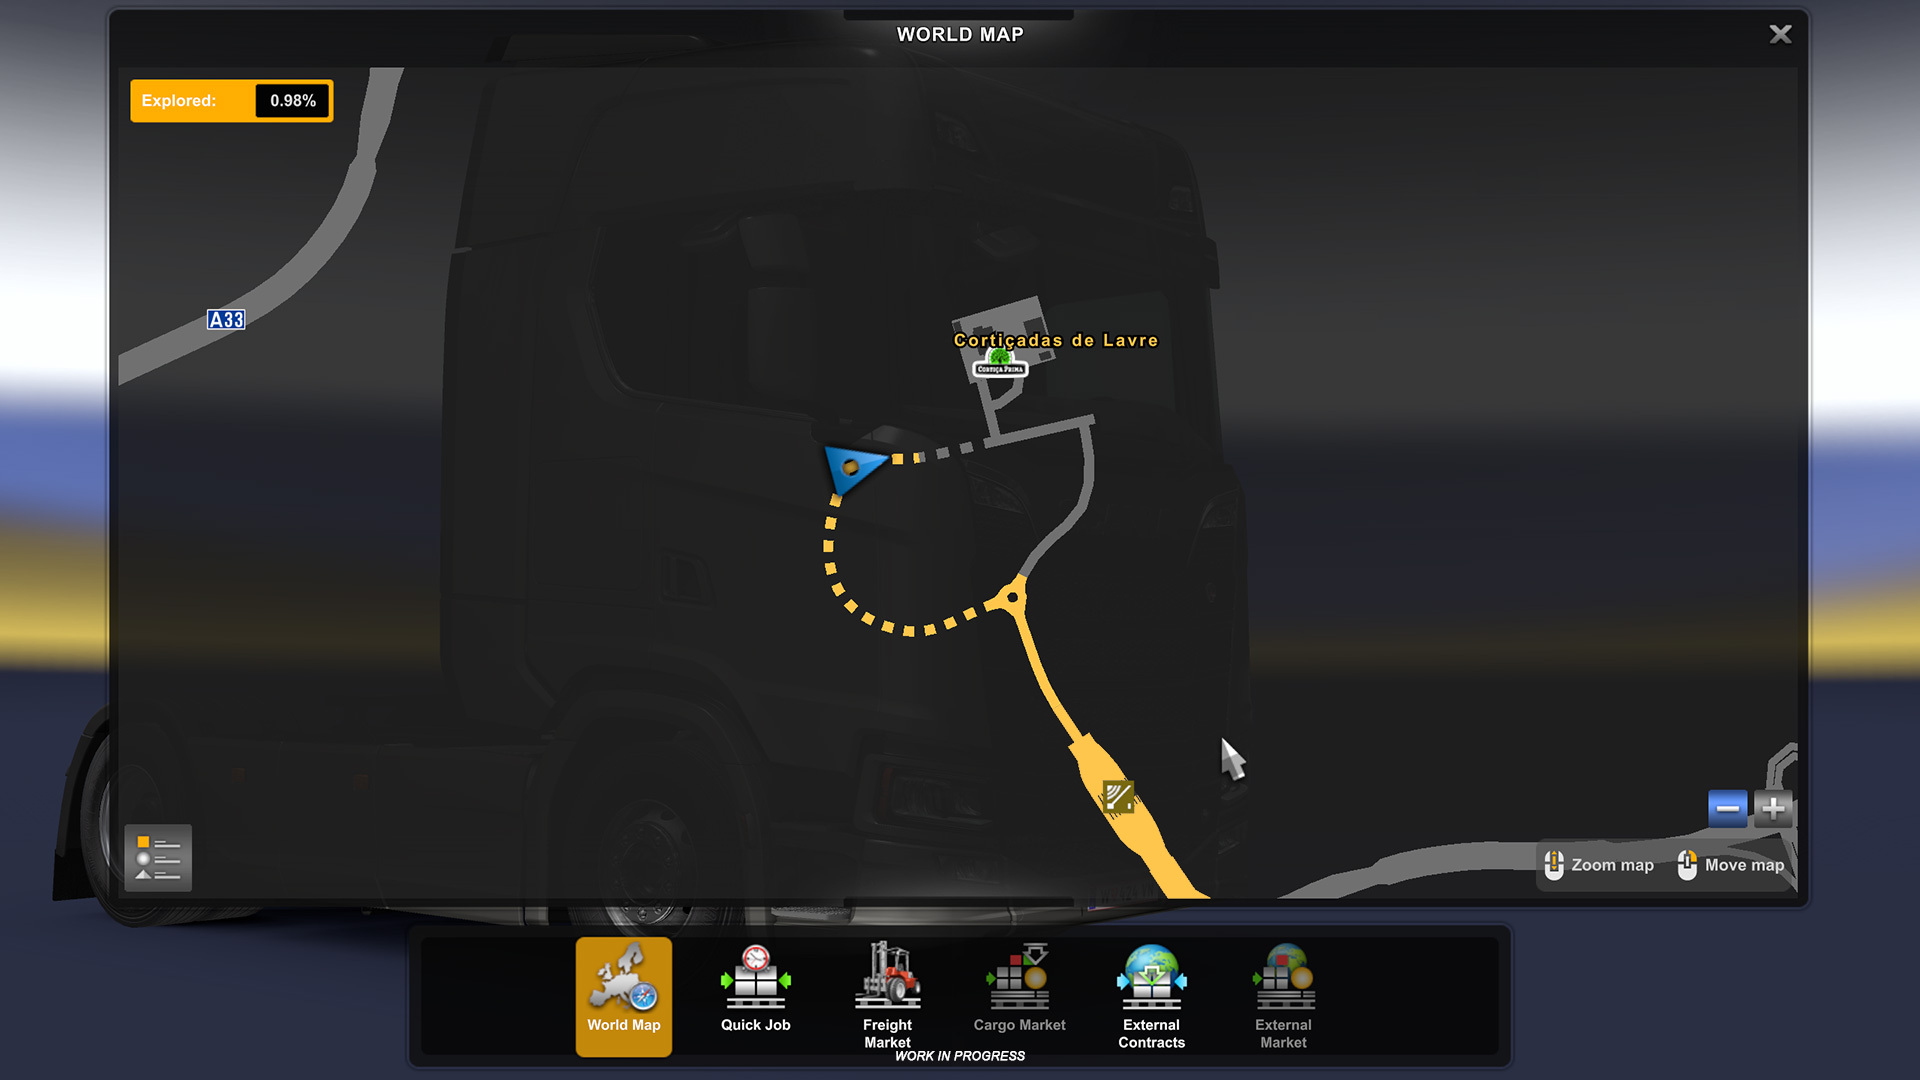 La próxima actualización de Euro Truck Simulator 2 pondrá caminos ocultos en el mapa cuando los descubras